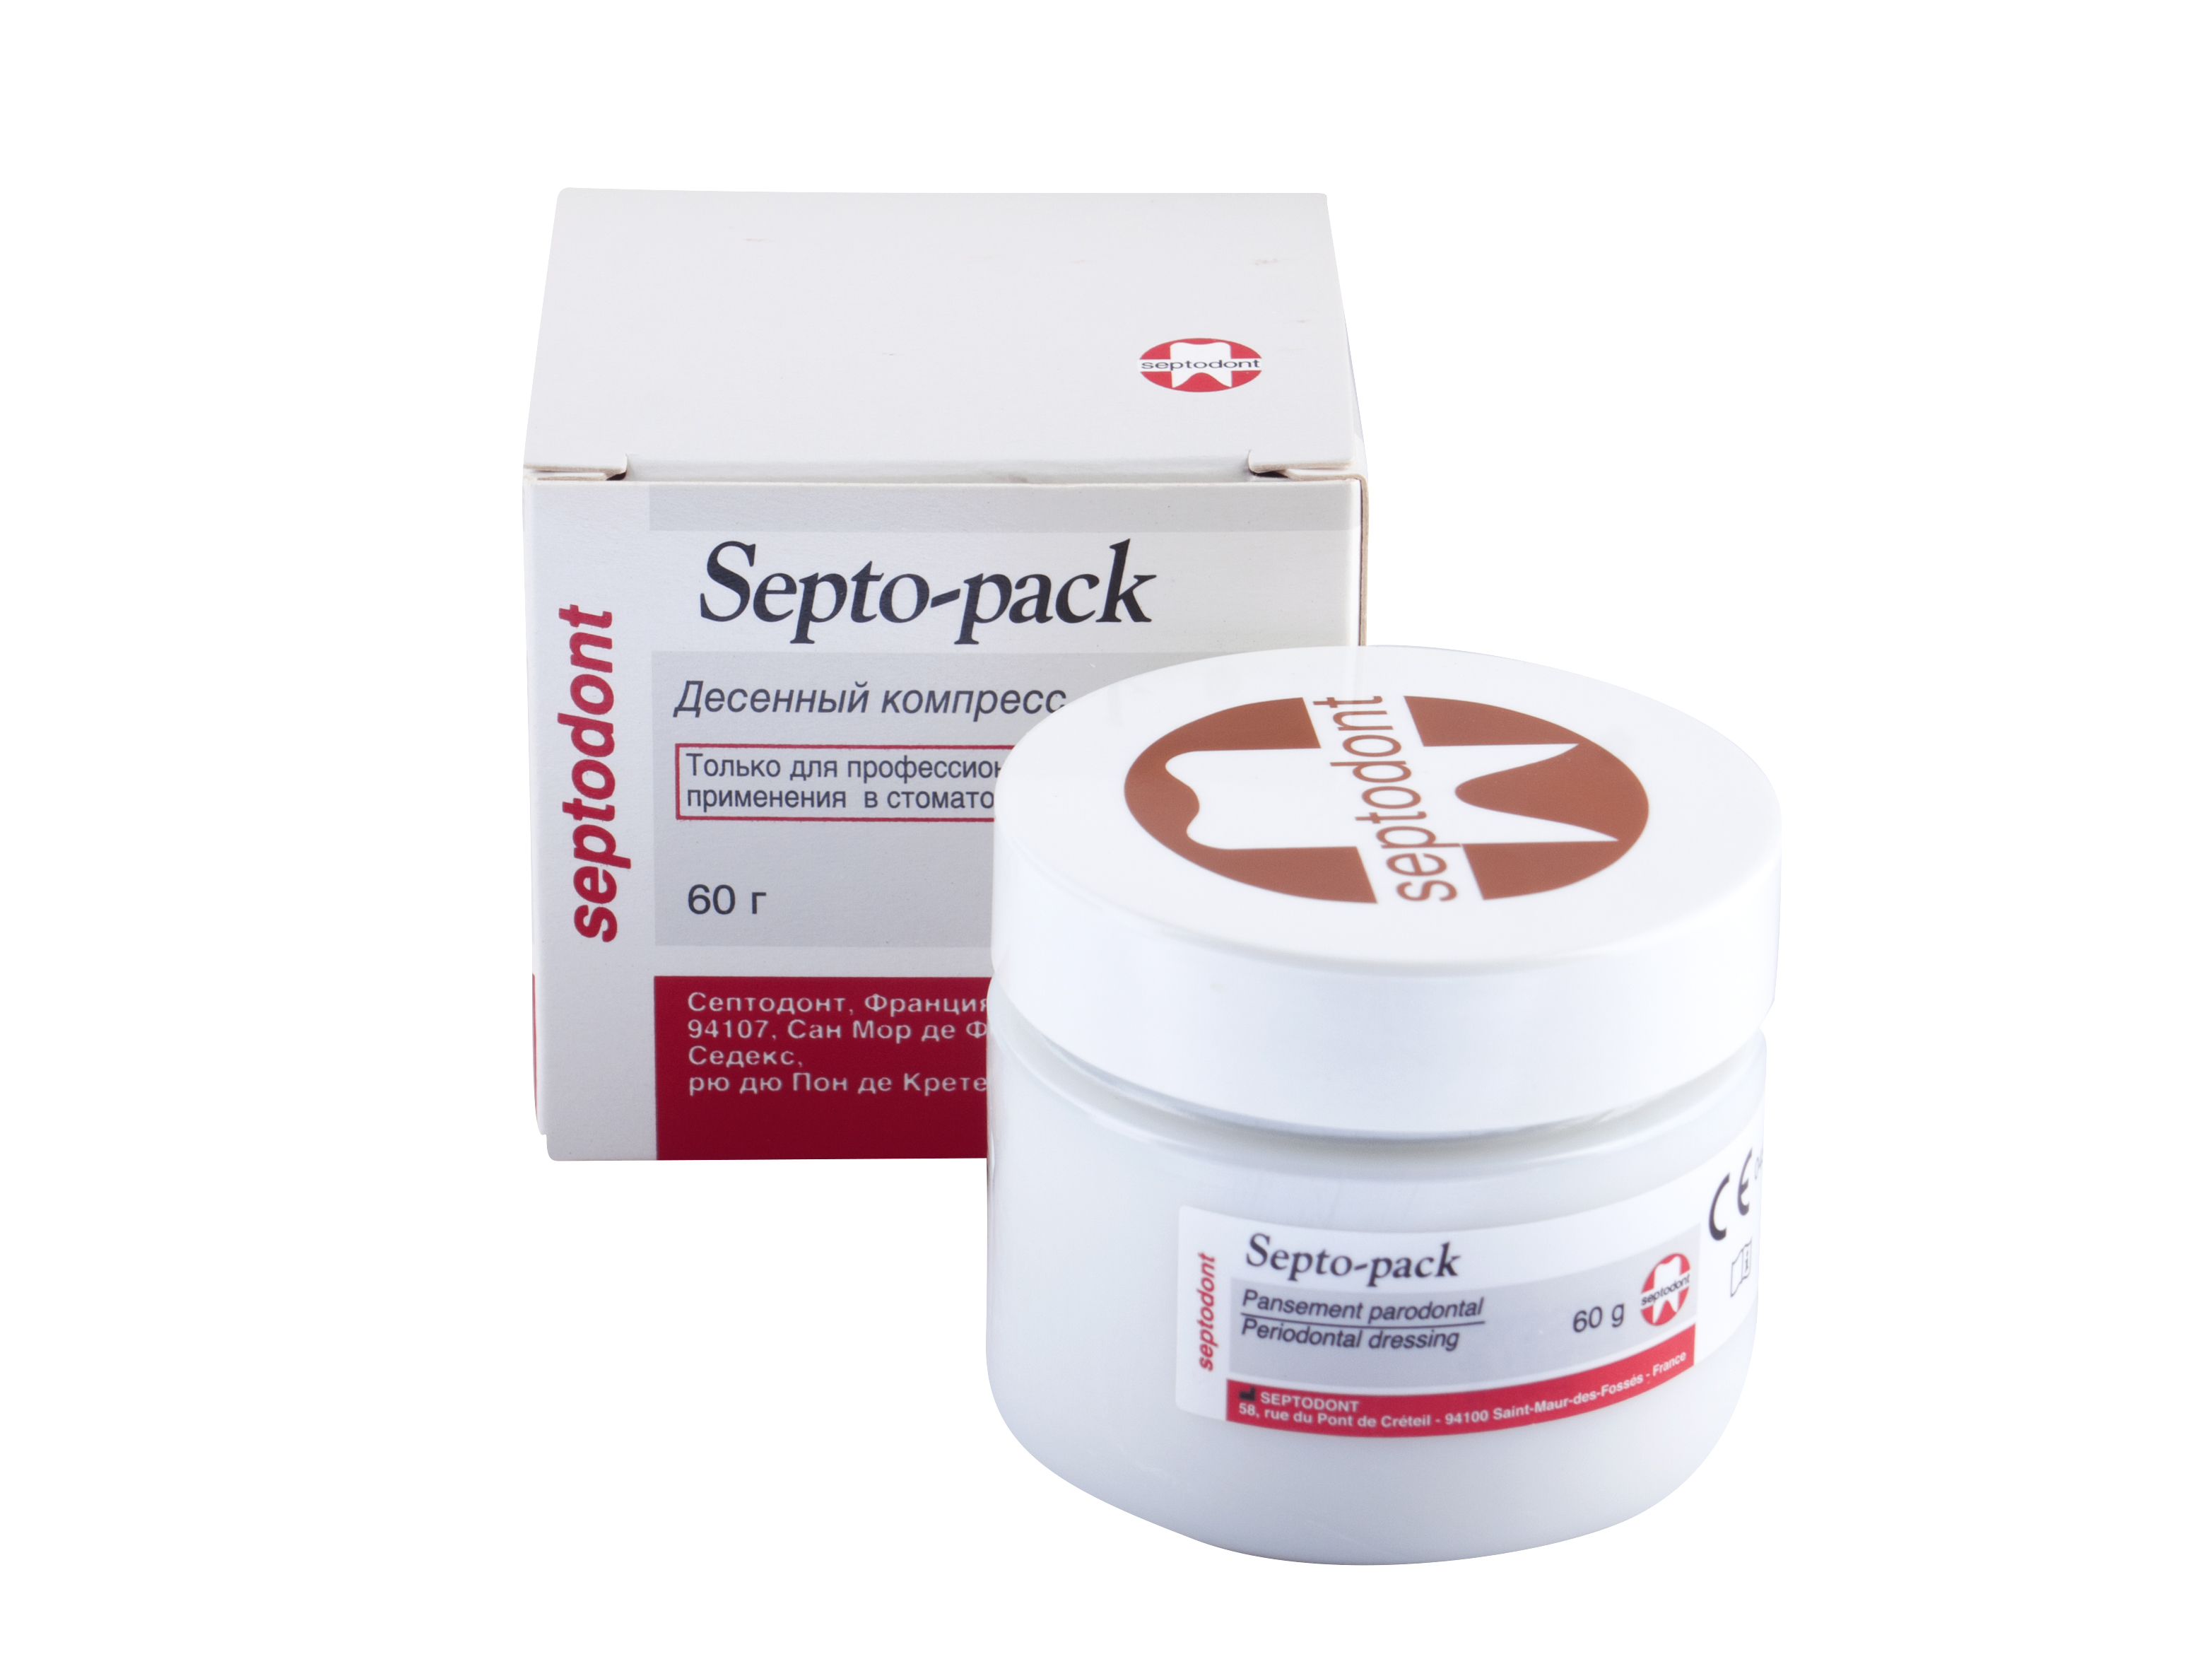 Septo-pack